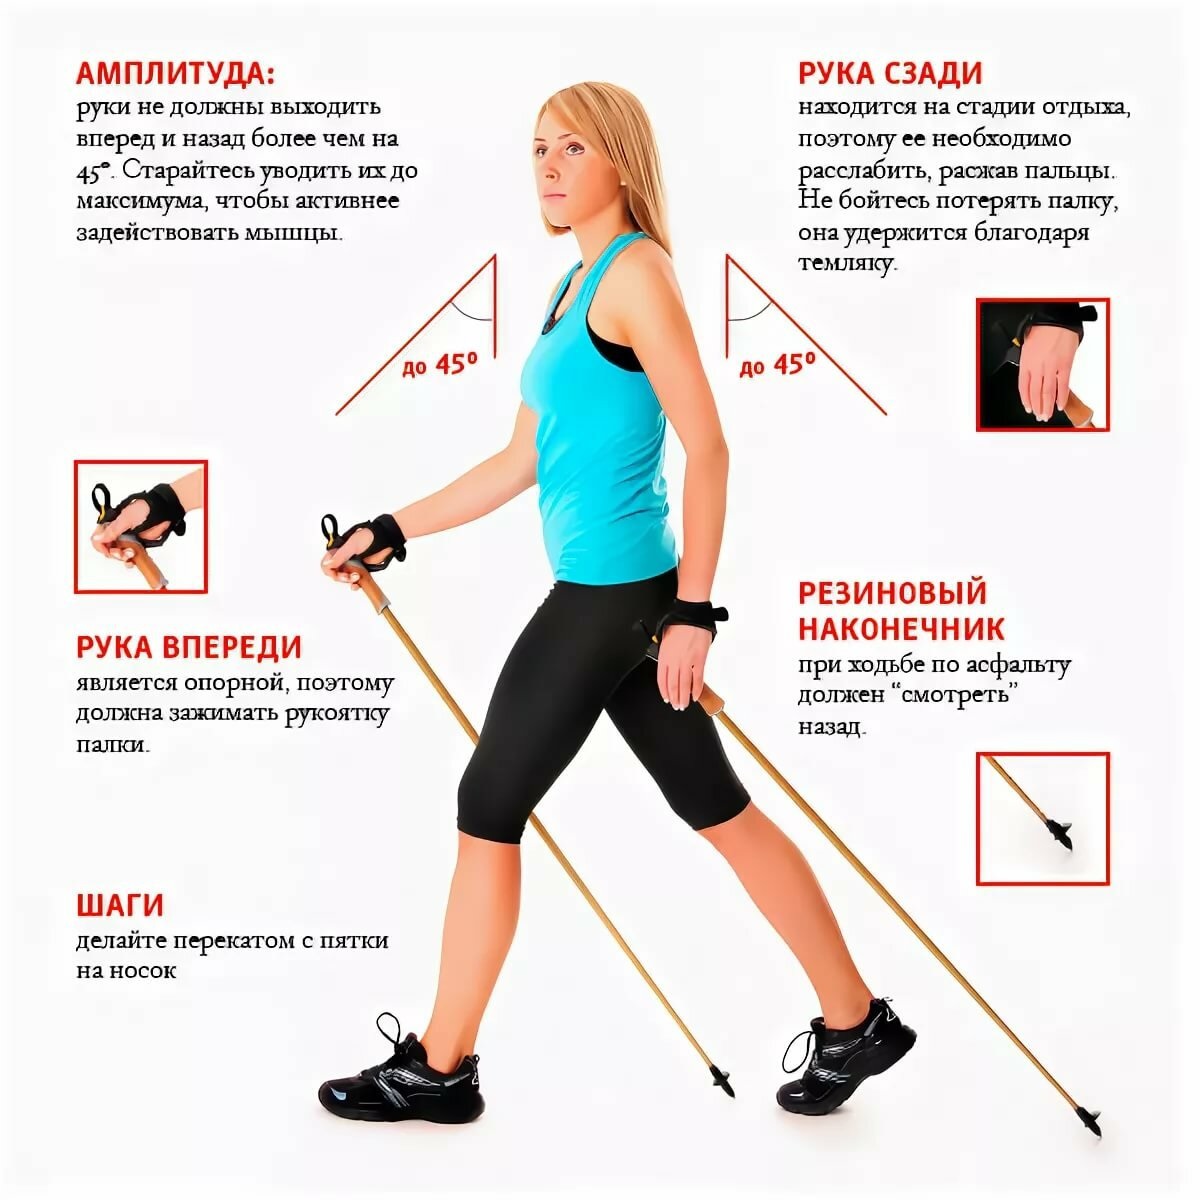 Скандинавская ходьба с палками для похудения: отзывы, техника, расход калорий